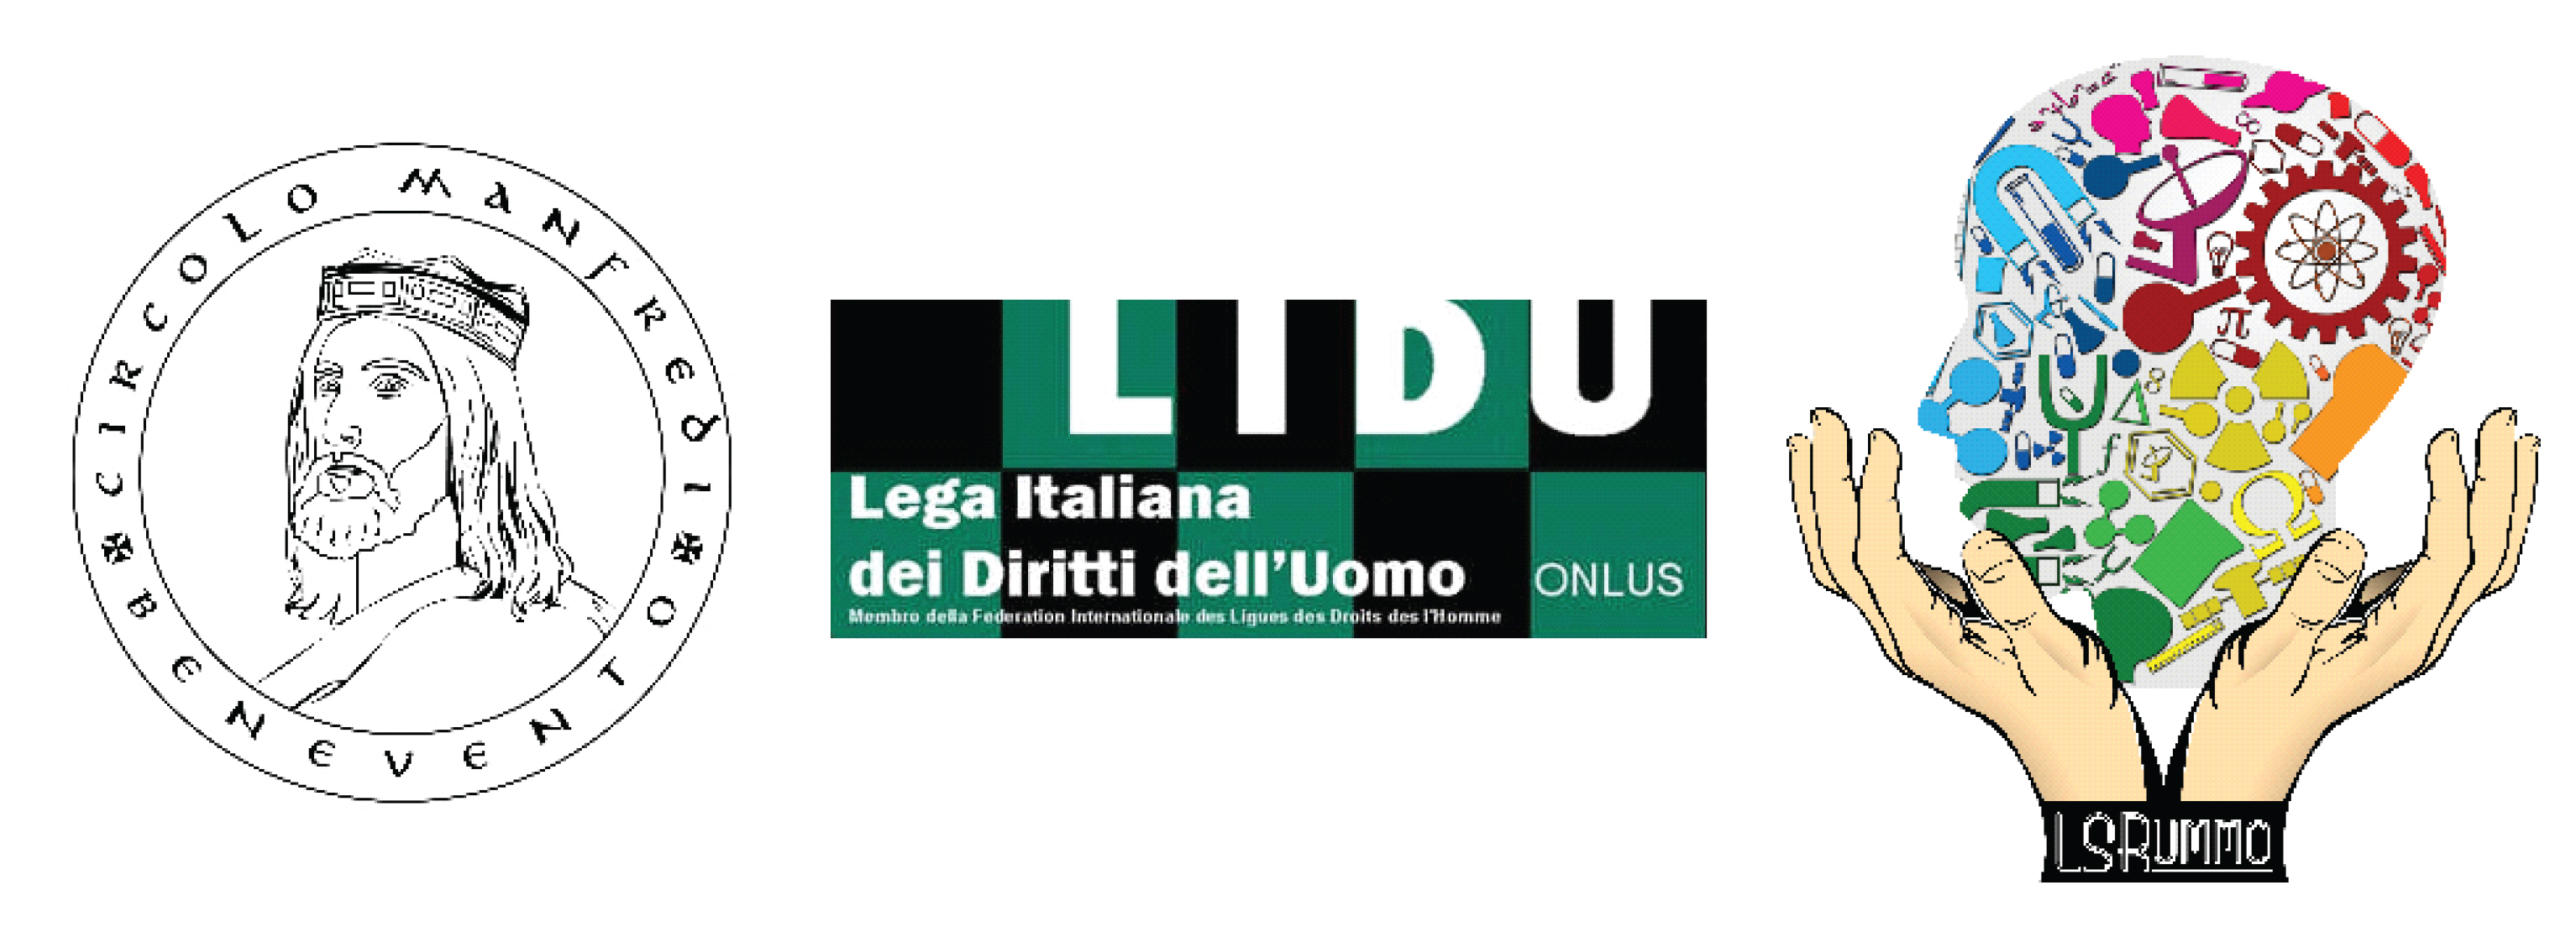 Benevento| Mostra Leggi razziali: Lidu e Circolo Manfredi ringraziano la Provincia